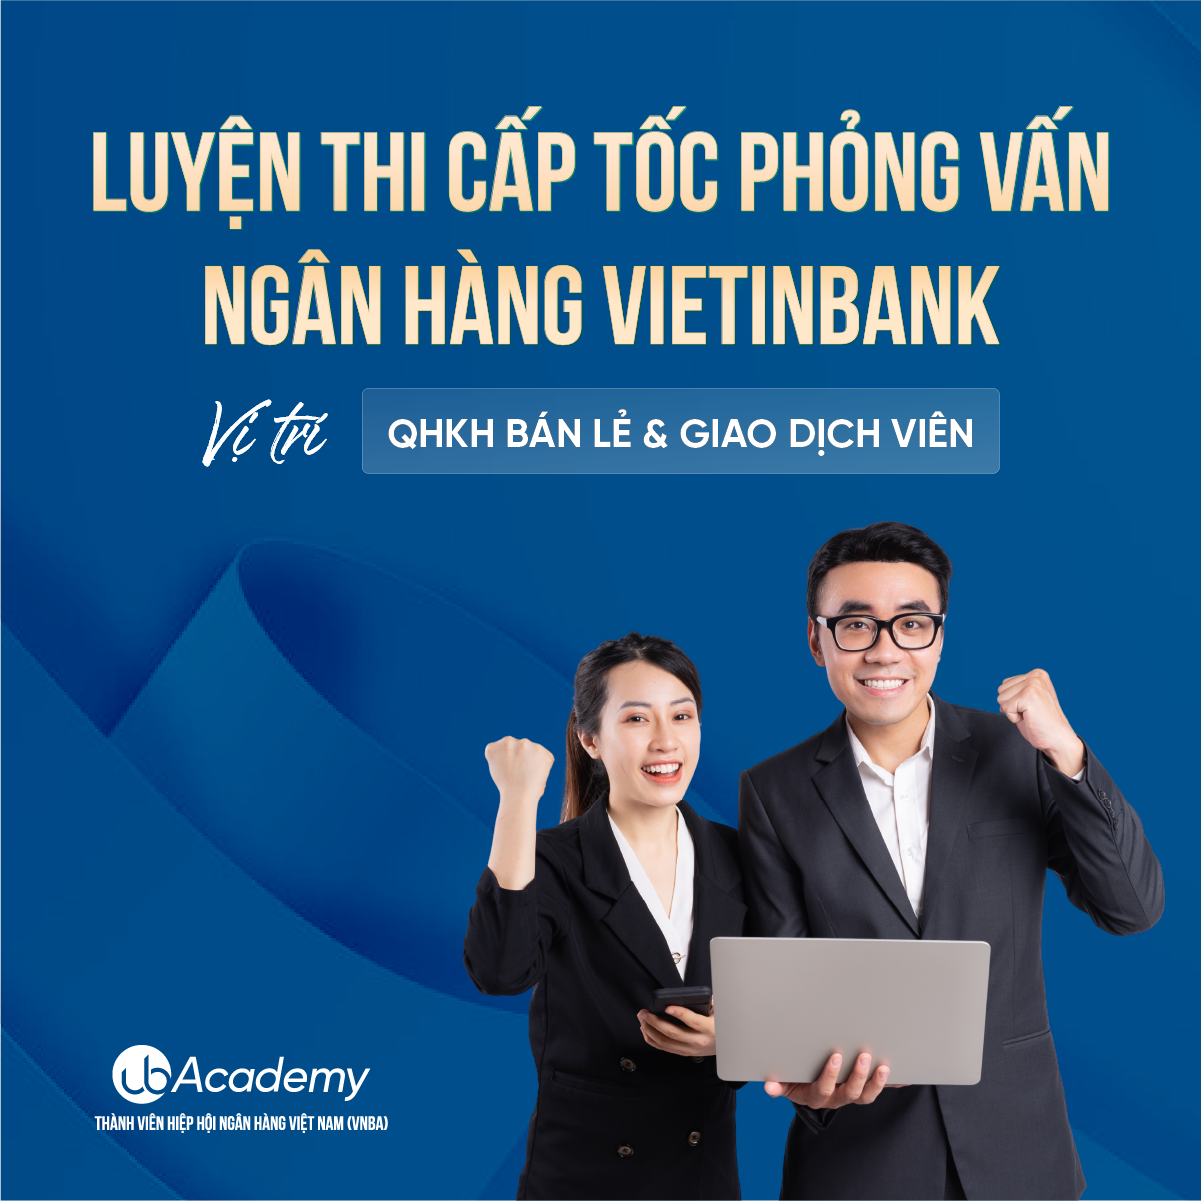 Luyện thi cấp tốc Phỏng vấn Ngân hàng VietinBank - QHKH bán lẻ & Giao dịch viên